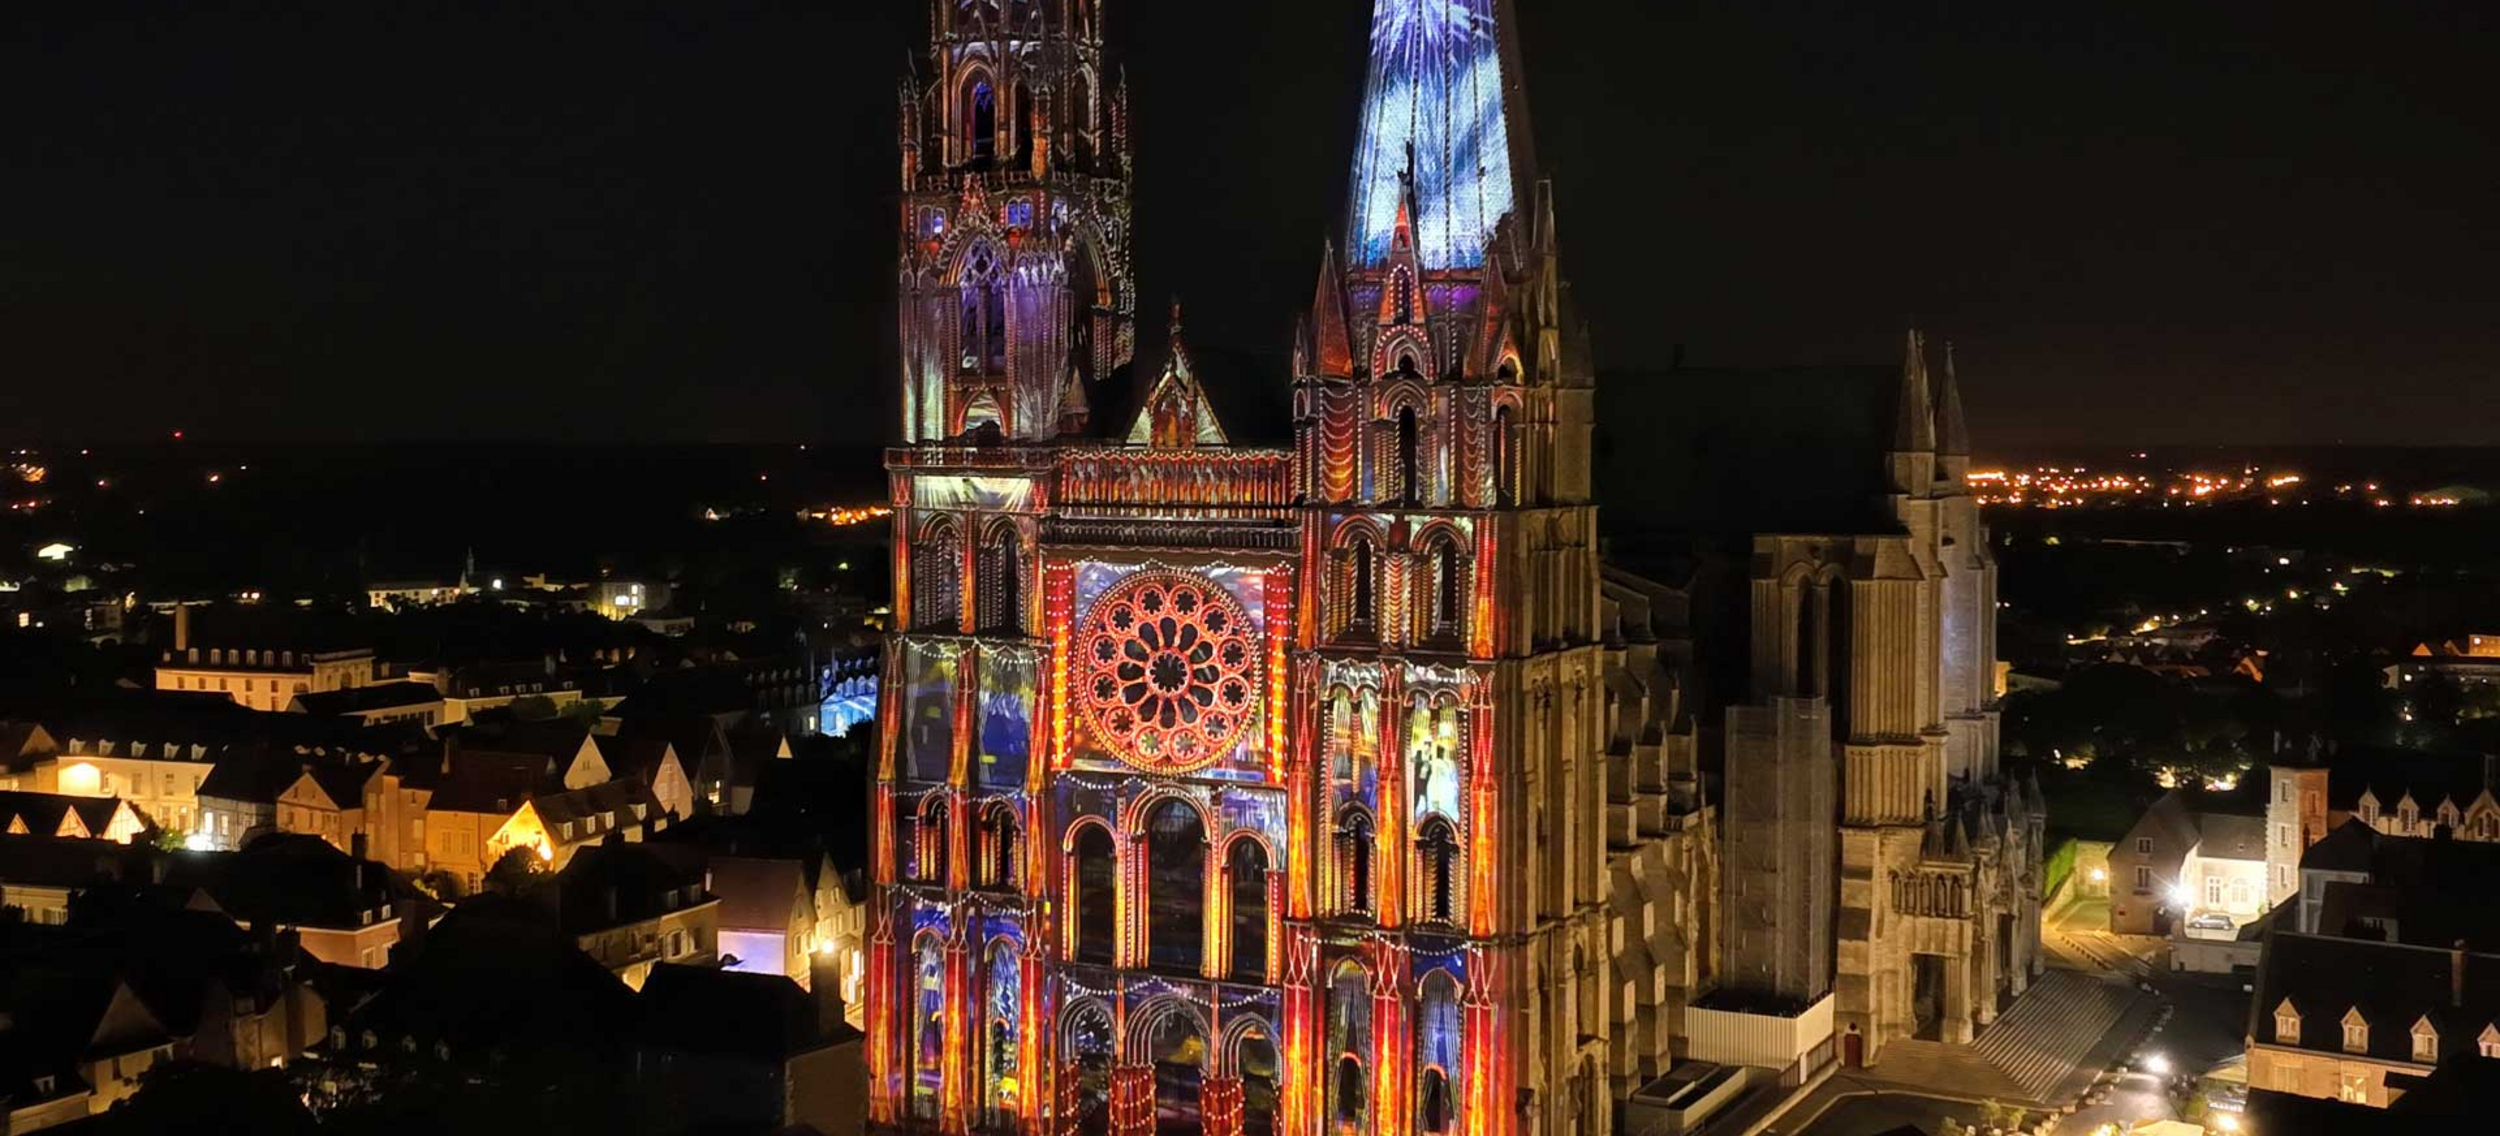 Portail royal de la cathédrale - Chartres, d’hier à demain